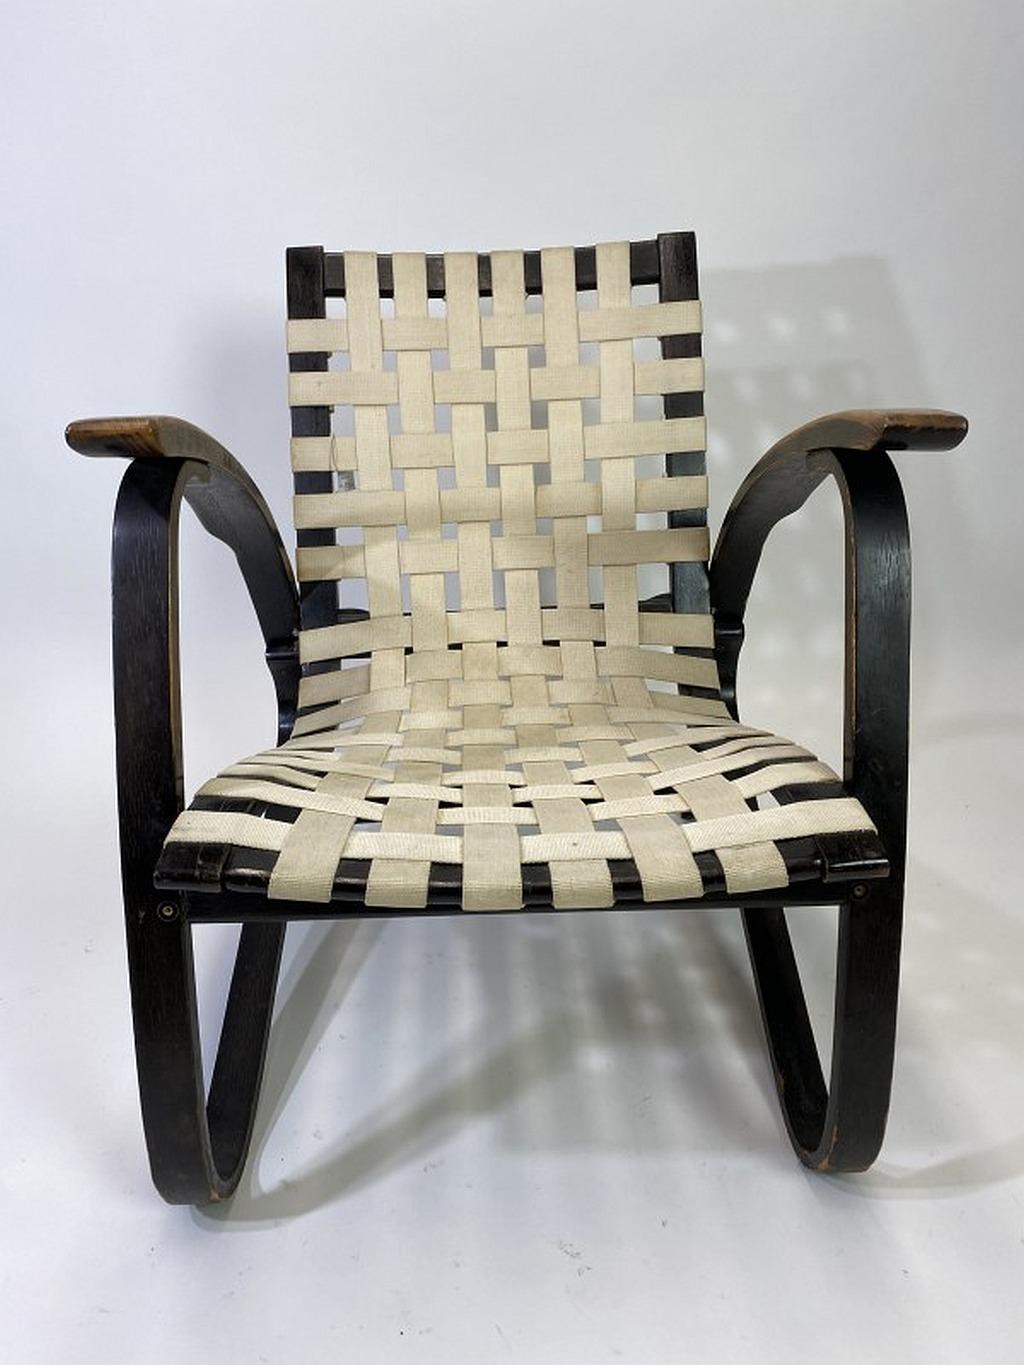 Schwarzer Bugholzsessel mit weiß geflochtenen Original-Gurtsitzen, entworfen von Jan Vanek in den 1930er Jahren. Die Sessel wurden von UP Zavody Brno hergestellt.